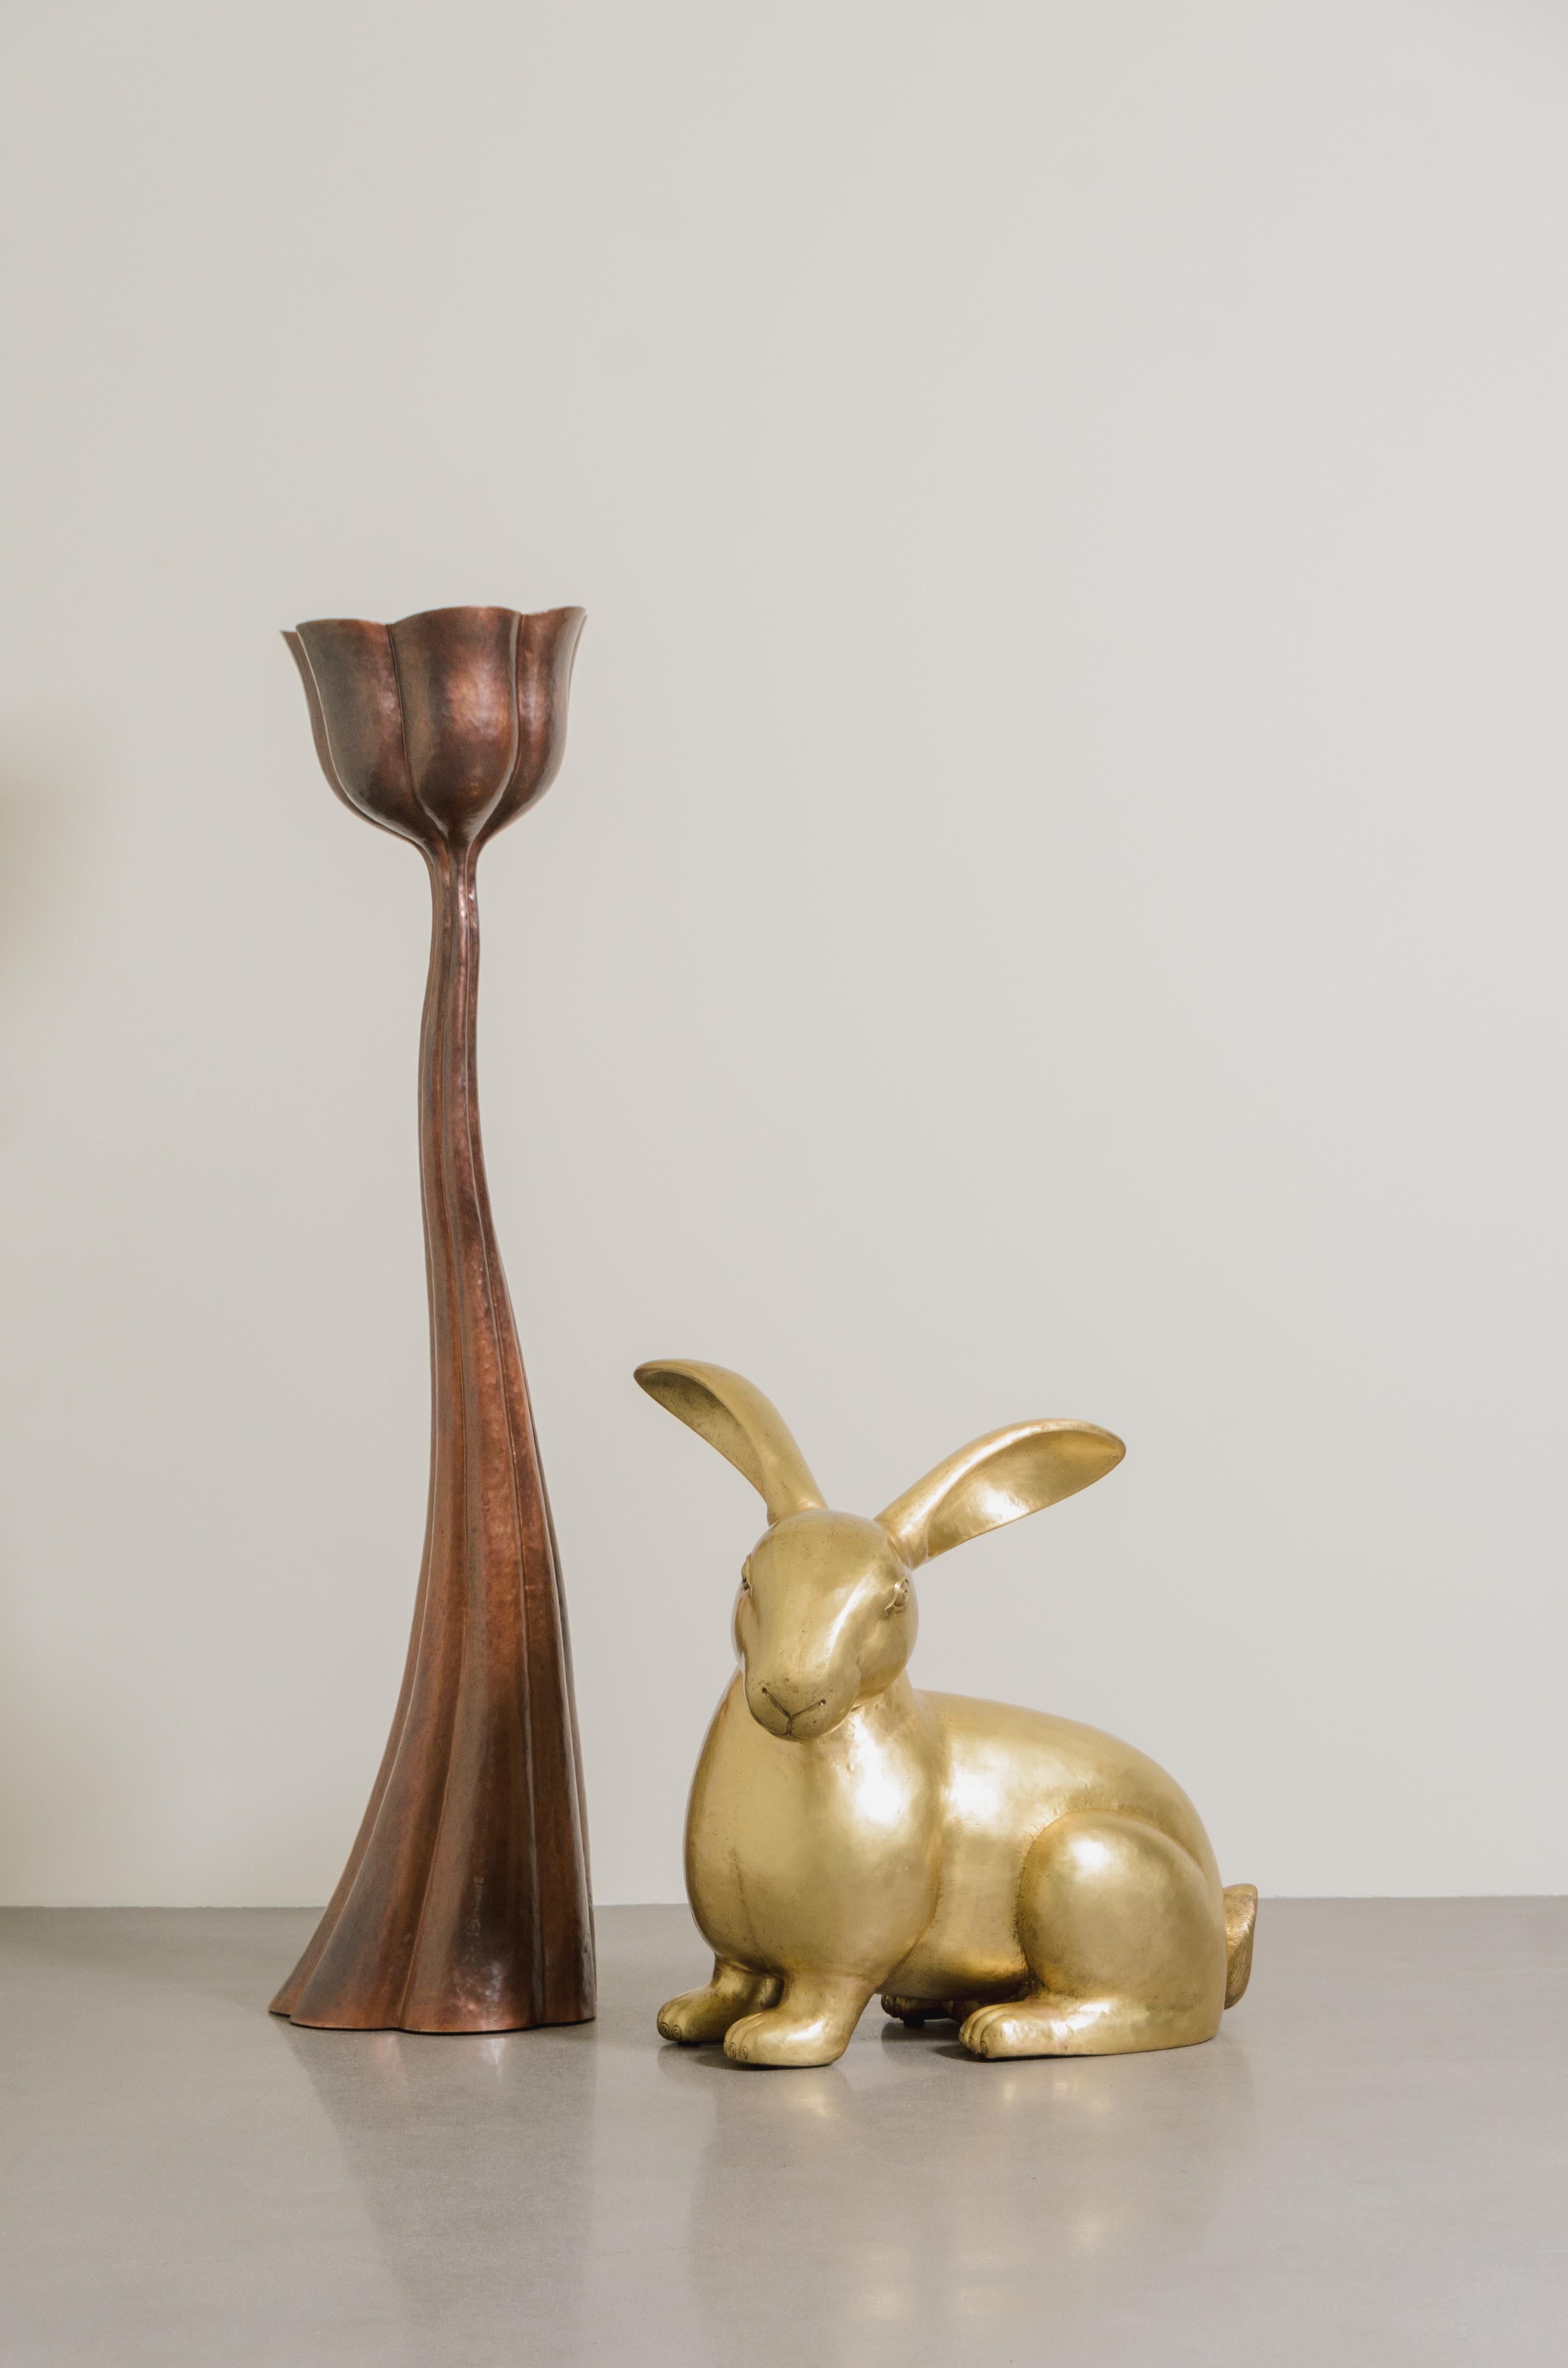 Kaninchen-Skulptur
Messing
Hand Repoussé
Zeitgenössisch
Limitierte Auflage
Jedes Stück wird individuell angefertigt und ist einzigartig. 

Repoussé ist die traditionelle Kunst, ein dekoratives Relief von Hand auf ein Blech zu hämmern. Die Technik